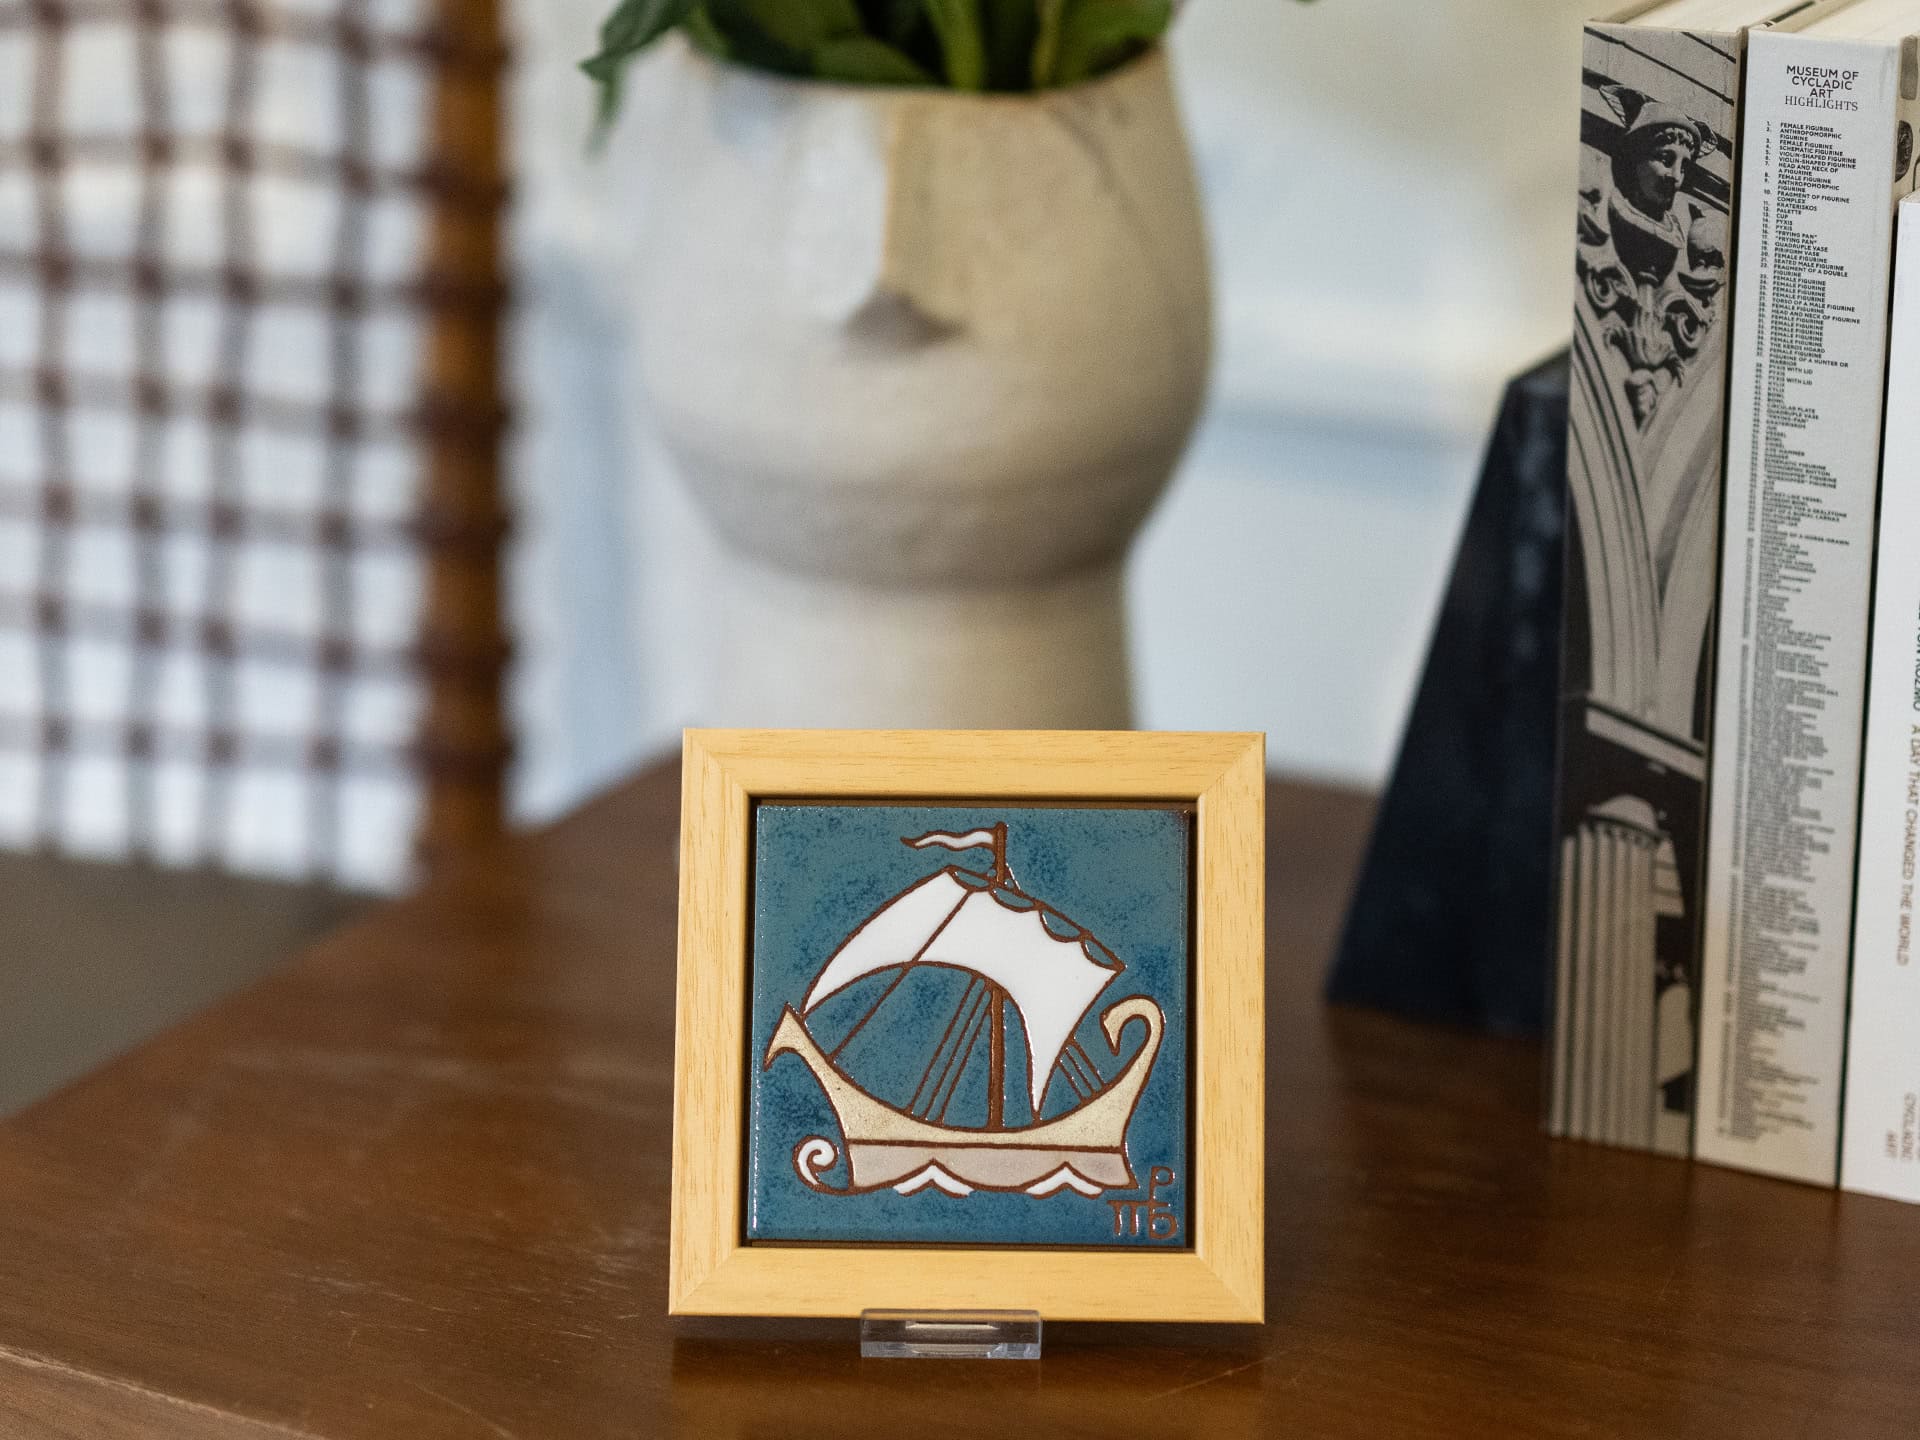 Handmade ceramic frame with a depiction of a ship.